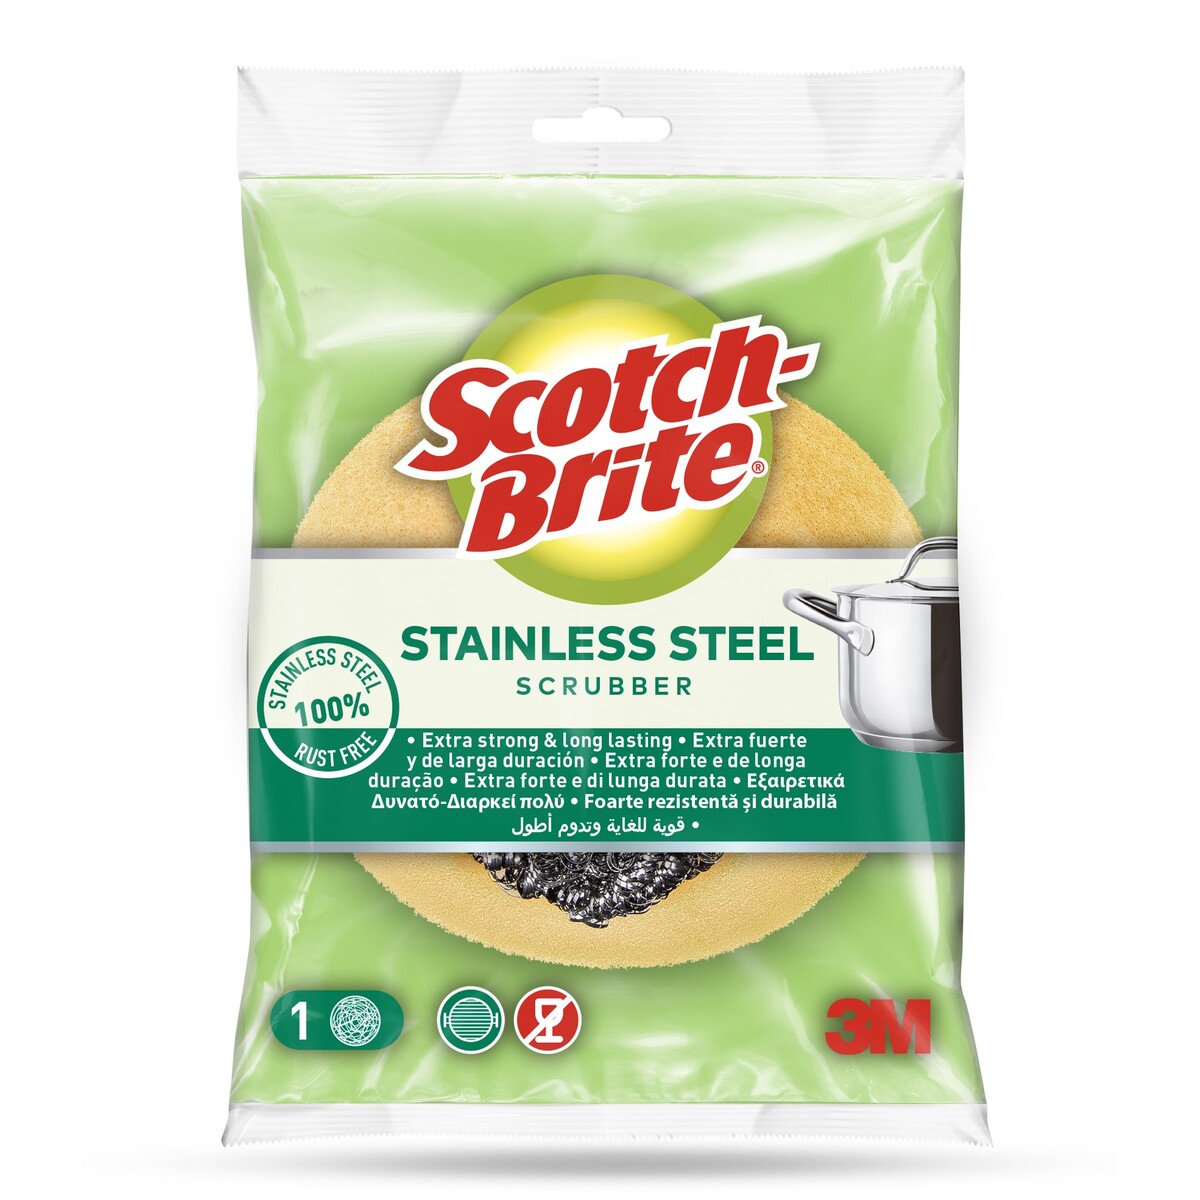 Scotch Brite Stainless Steel Spiral + Sponge 1pc